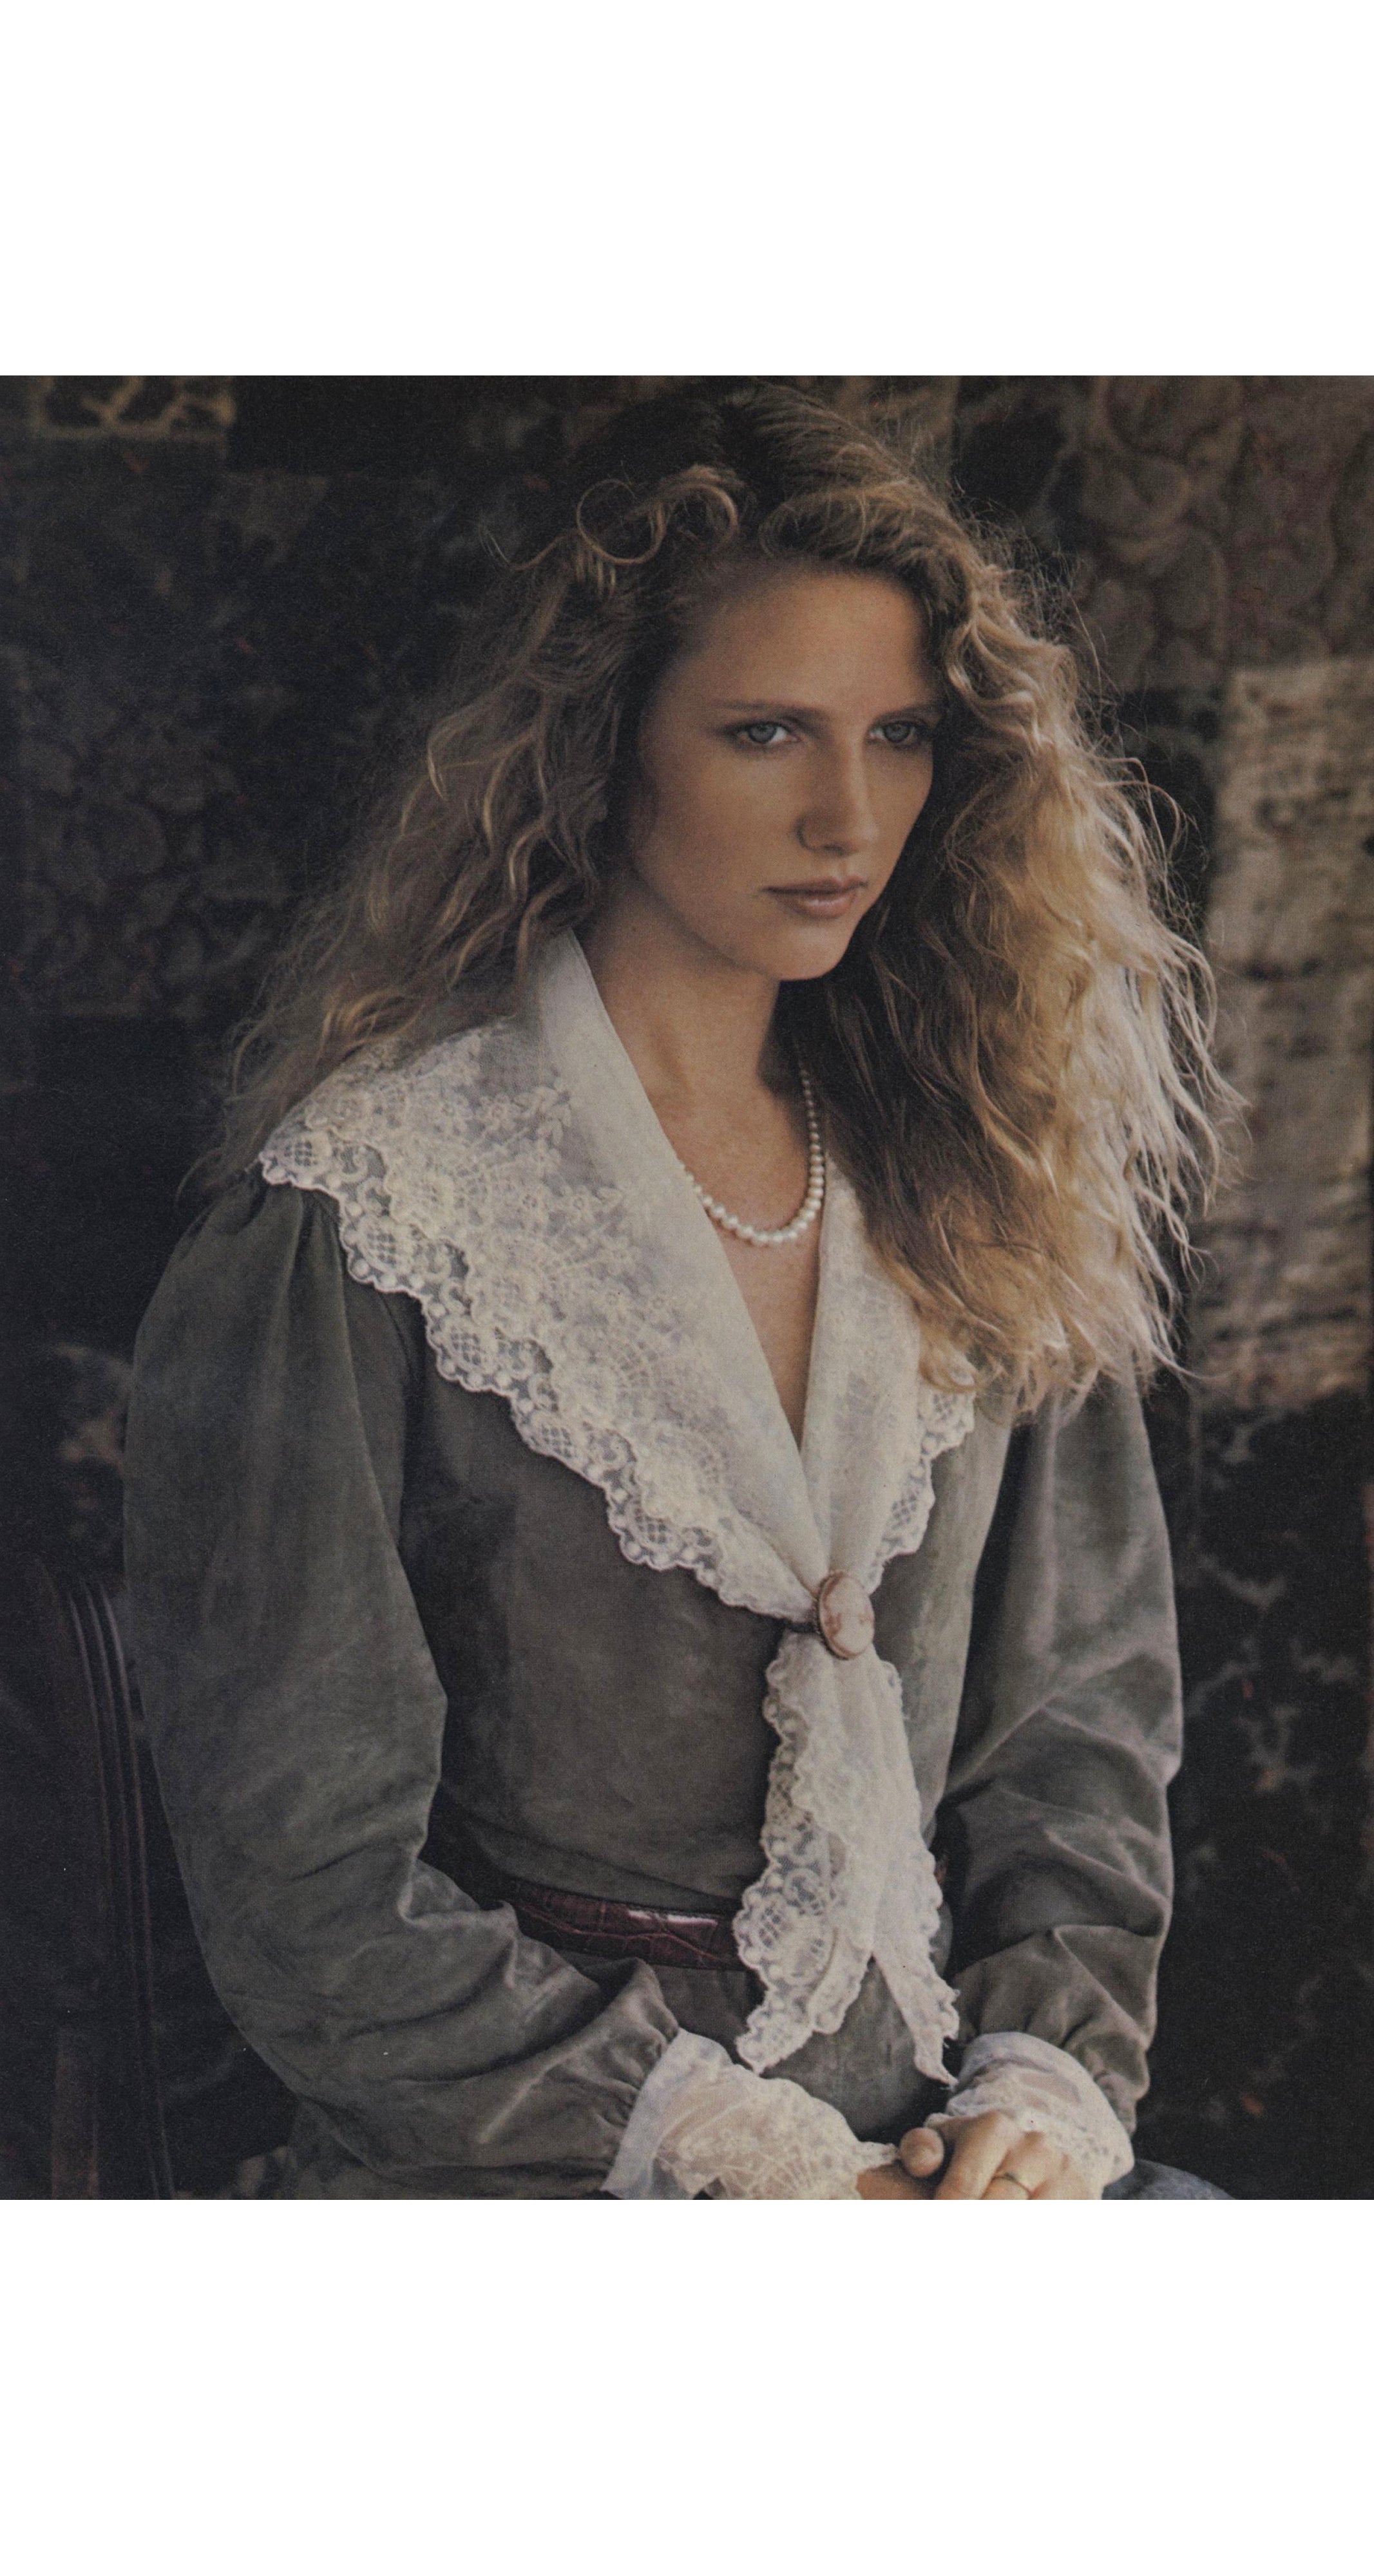 1982-83 F/W Ad Campaign Ecru Lace Collar Blouse